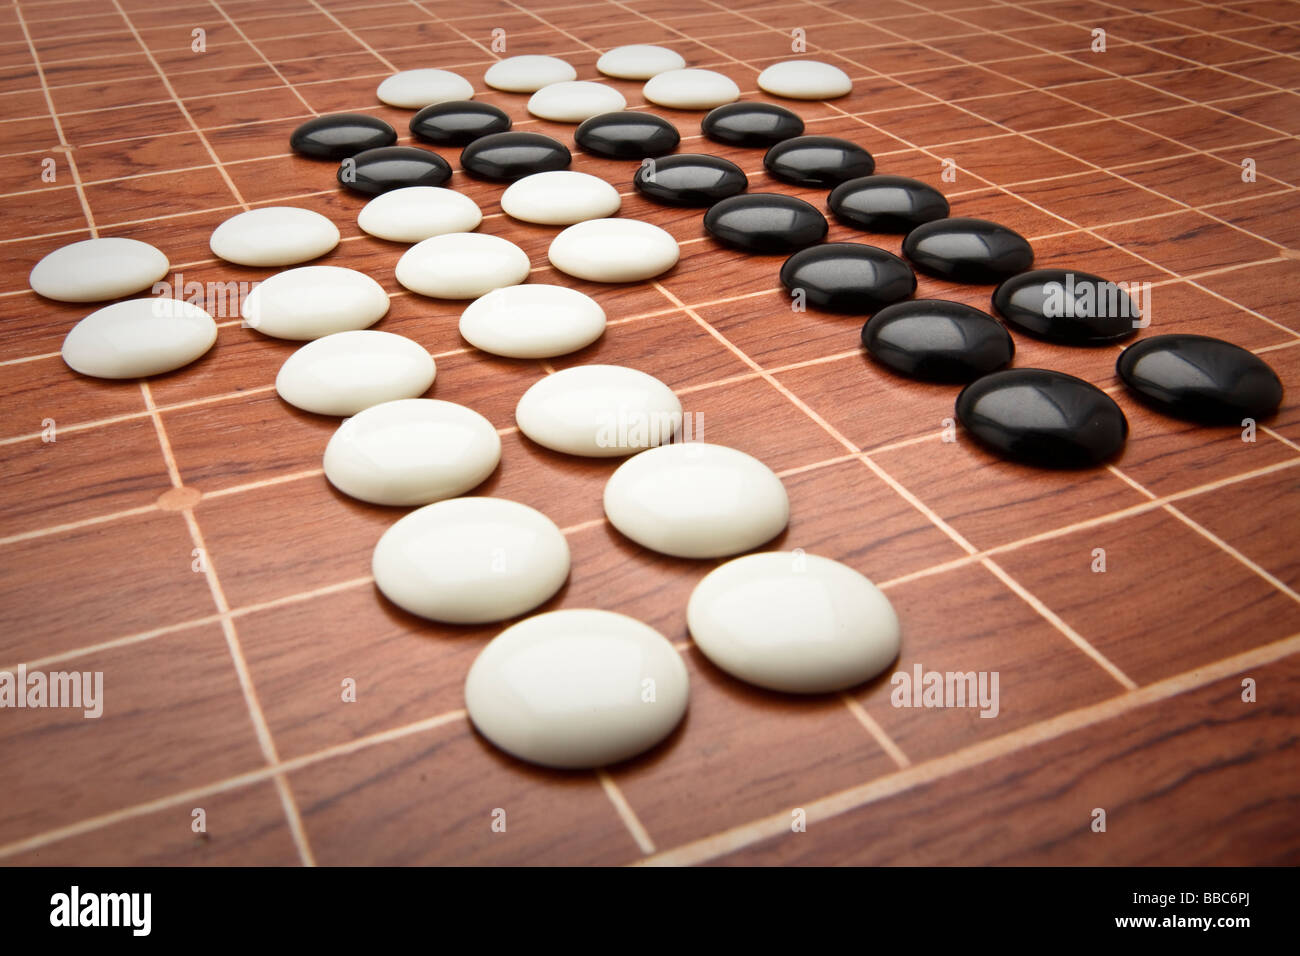 Zähler und Vorstand für das chinesische Brettspiel Go, manchmal auch als  Chinese Checkers Stockfotografie - Alamy